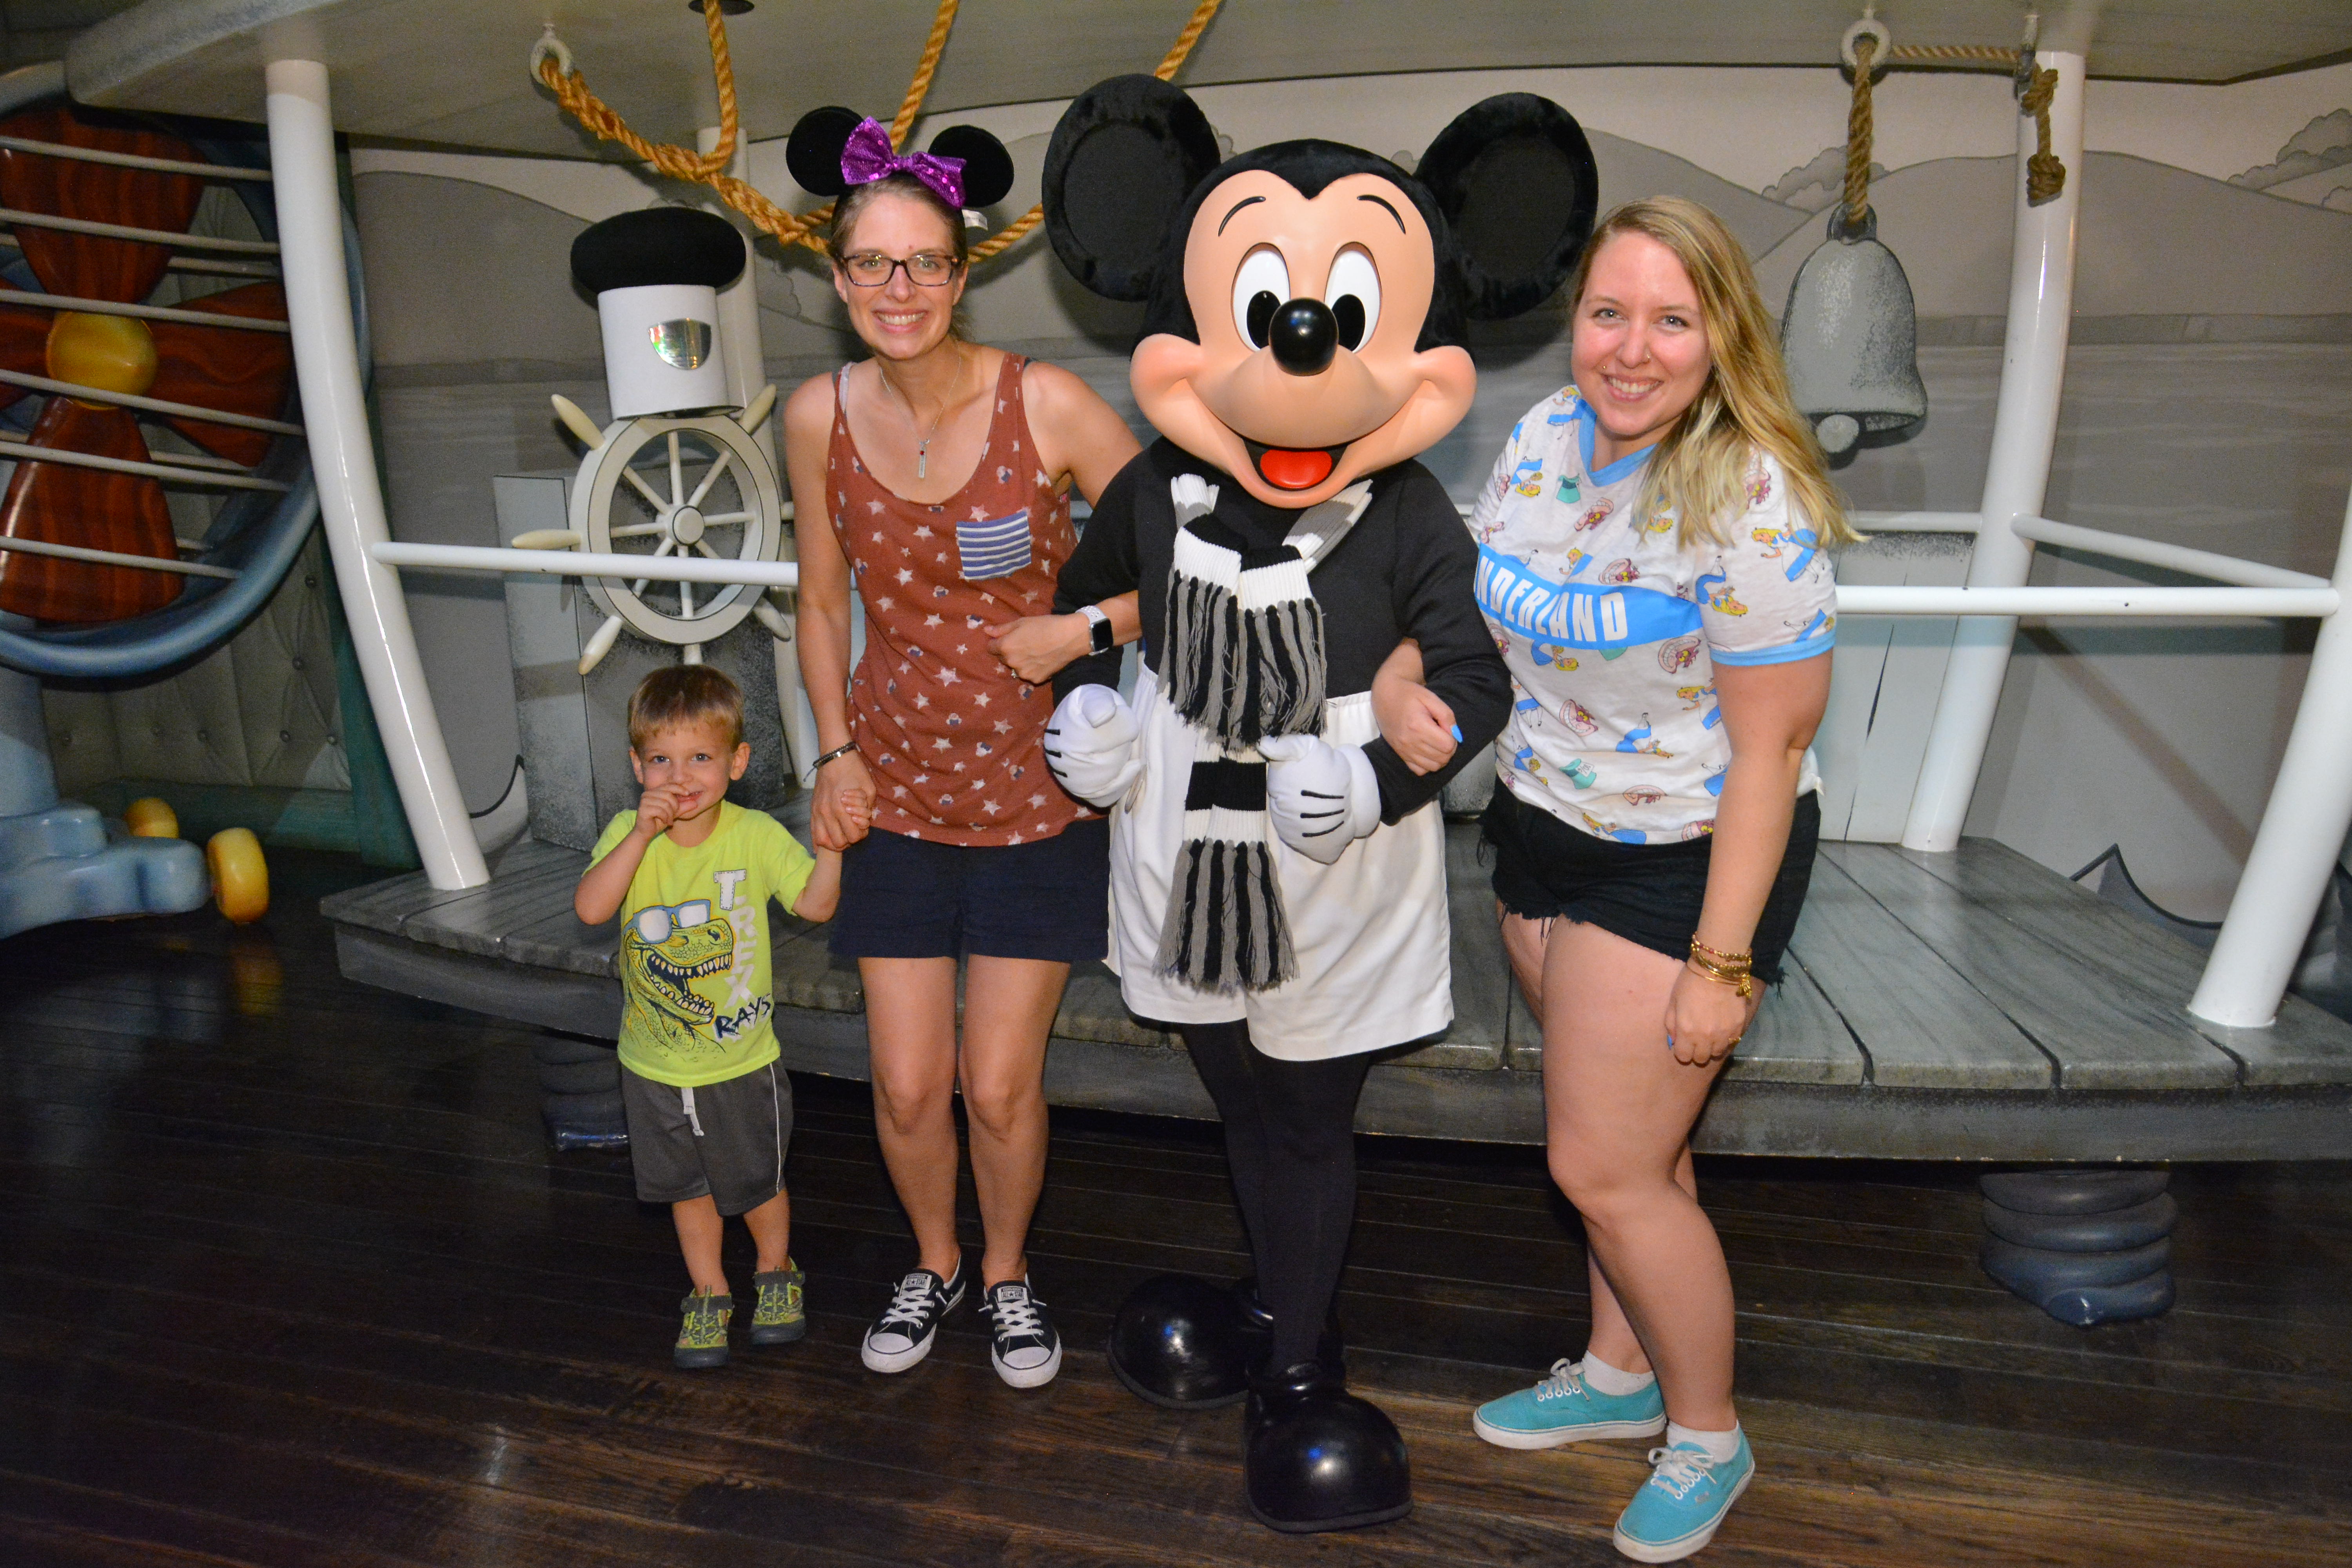 Meeting Mickey At Disneyland